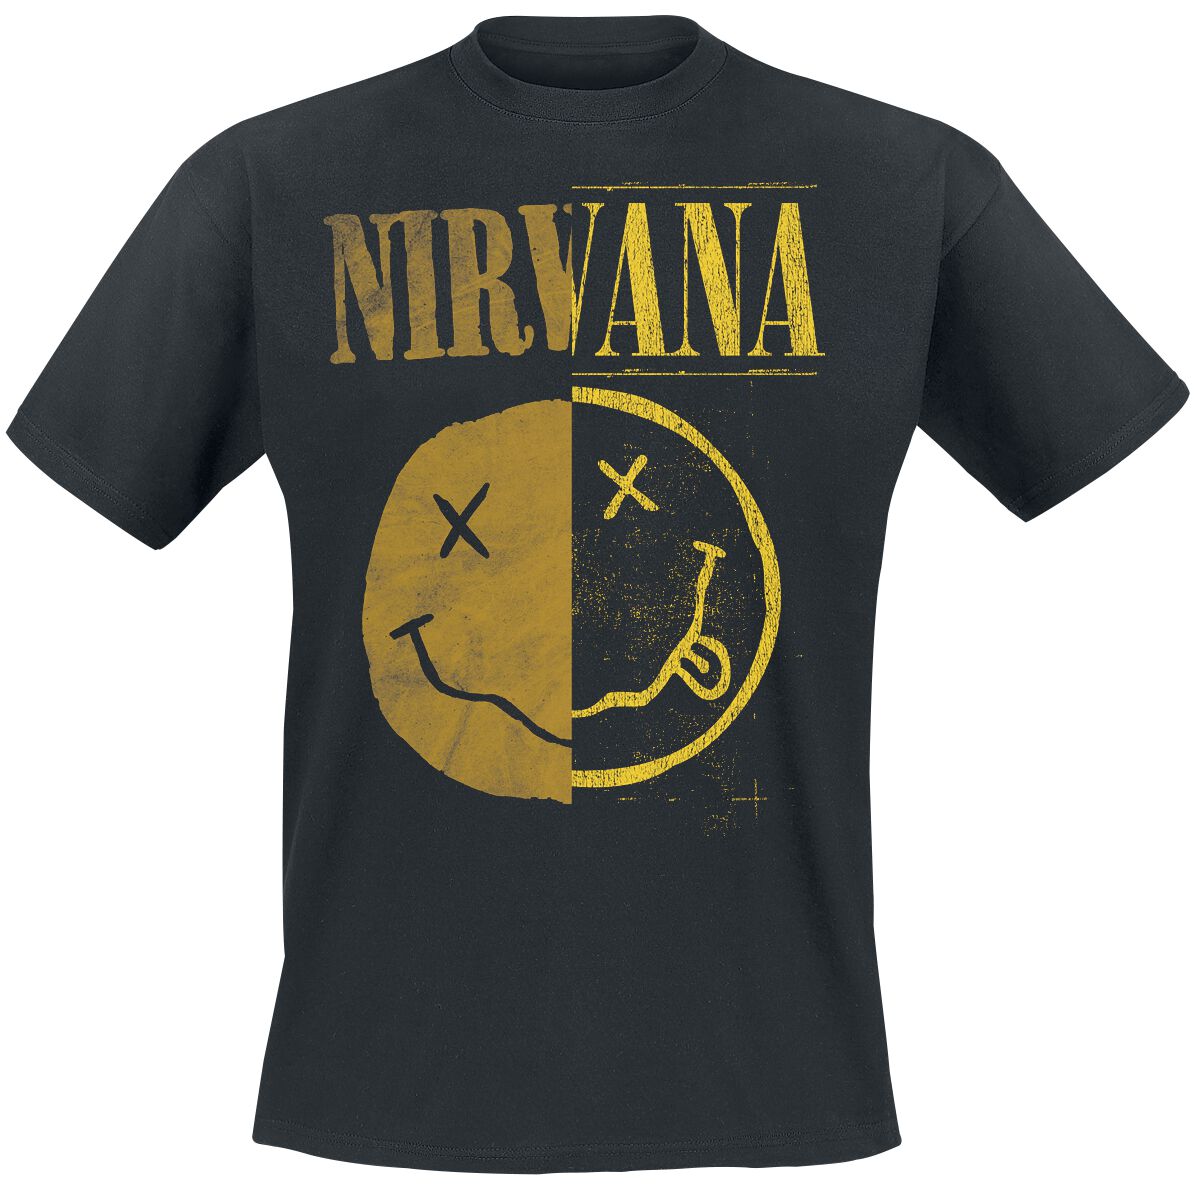 Nirvana T-Shirt - Spliced Smiley - S bis XXL - für Männer - Größe M - schwarz  - Lizenziertes Merchandise!